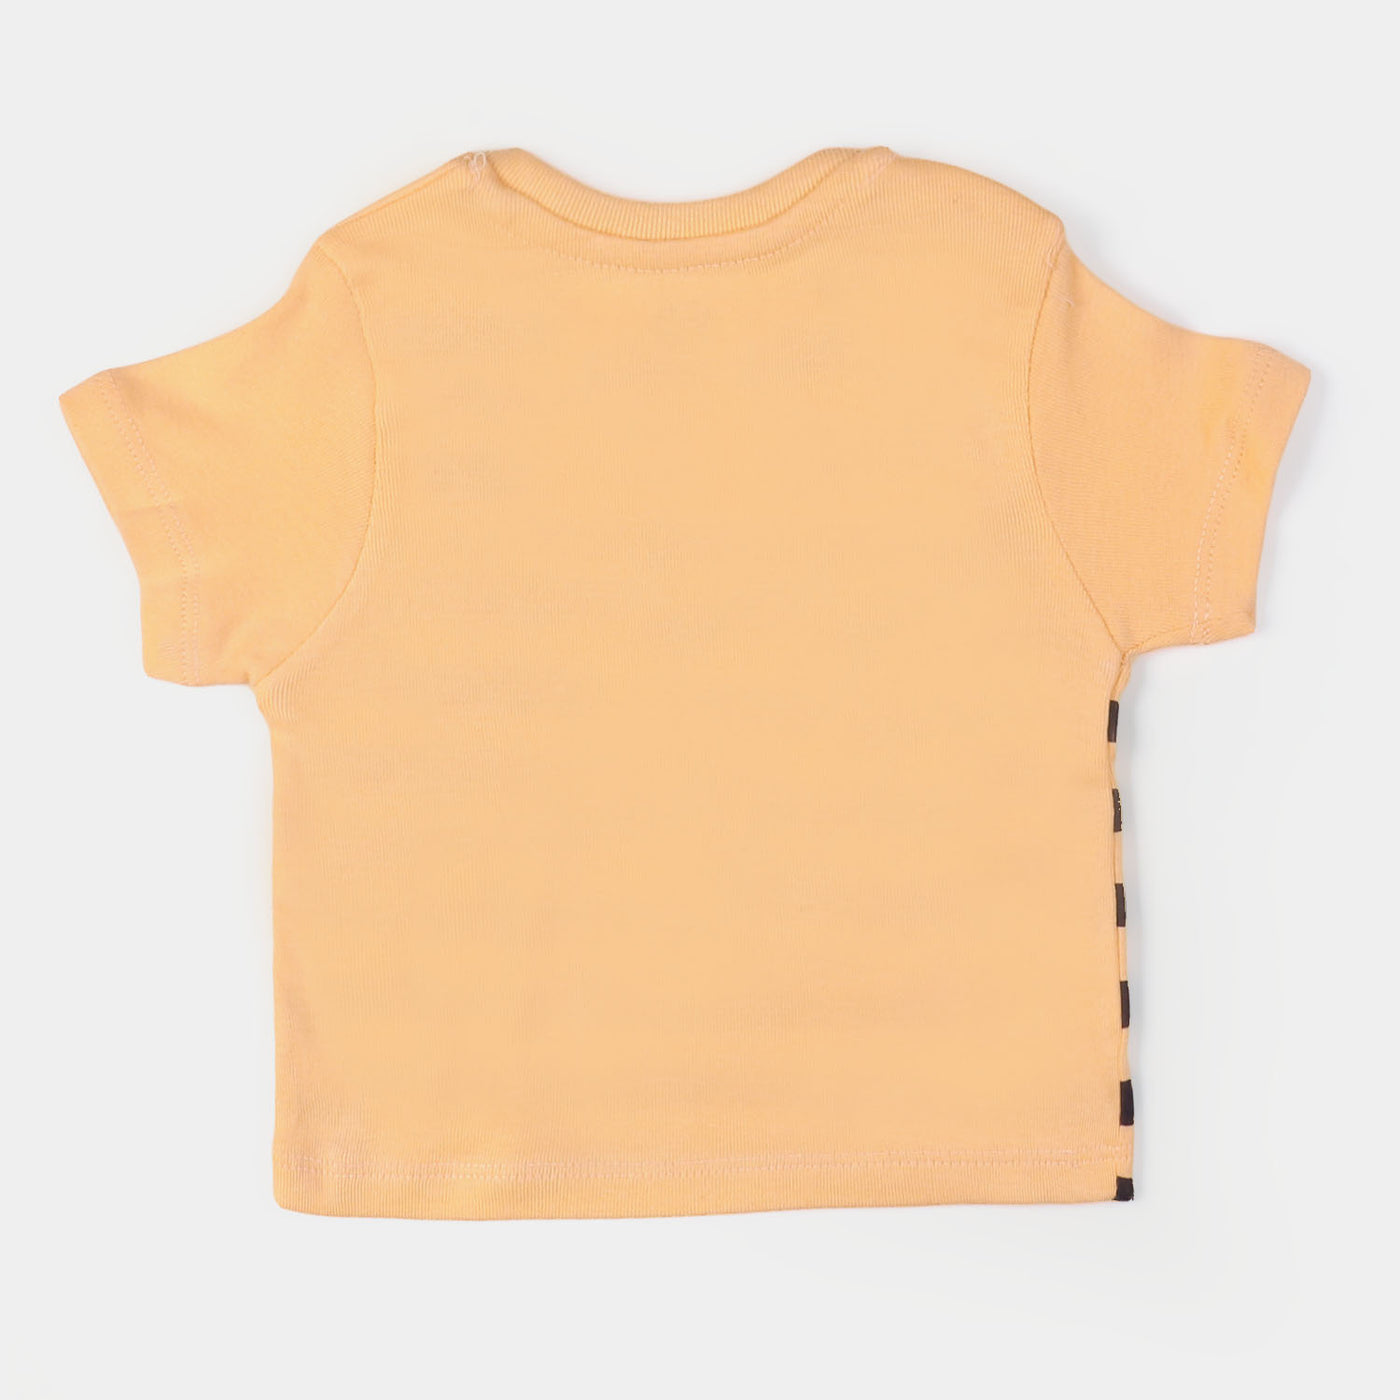 Infant Boys Rib T-Shirt 3Pcs Sea Champ - Multi